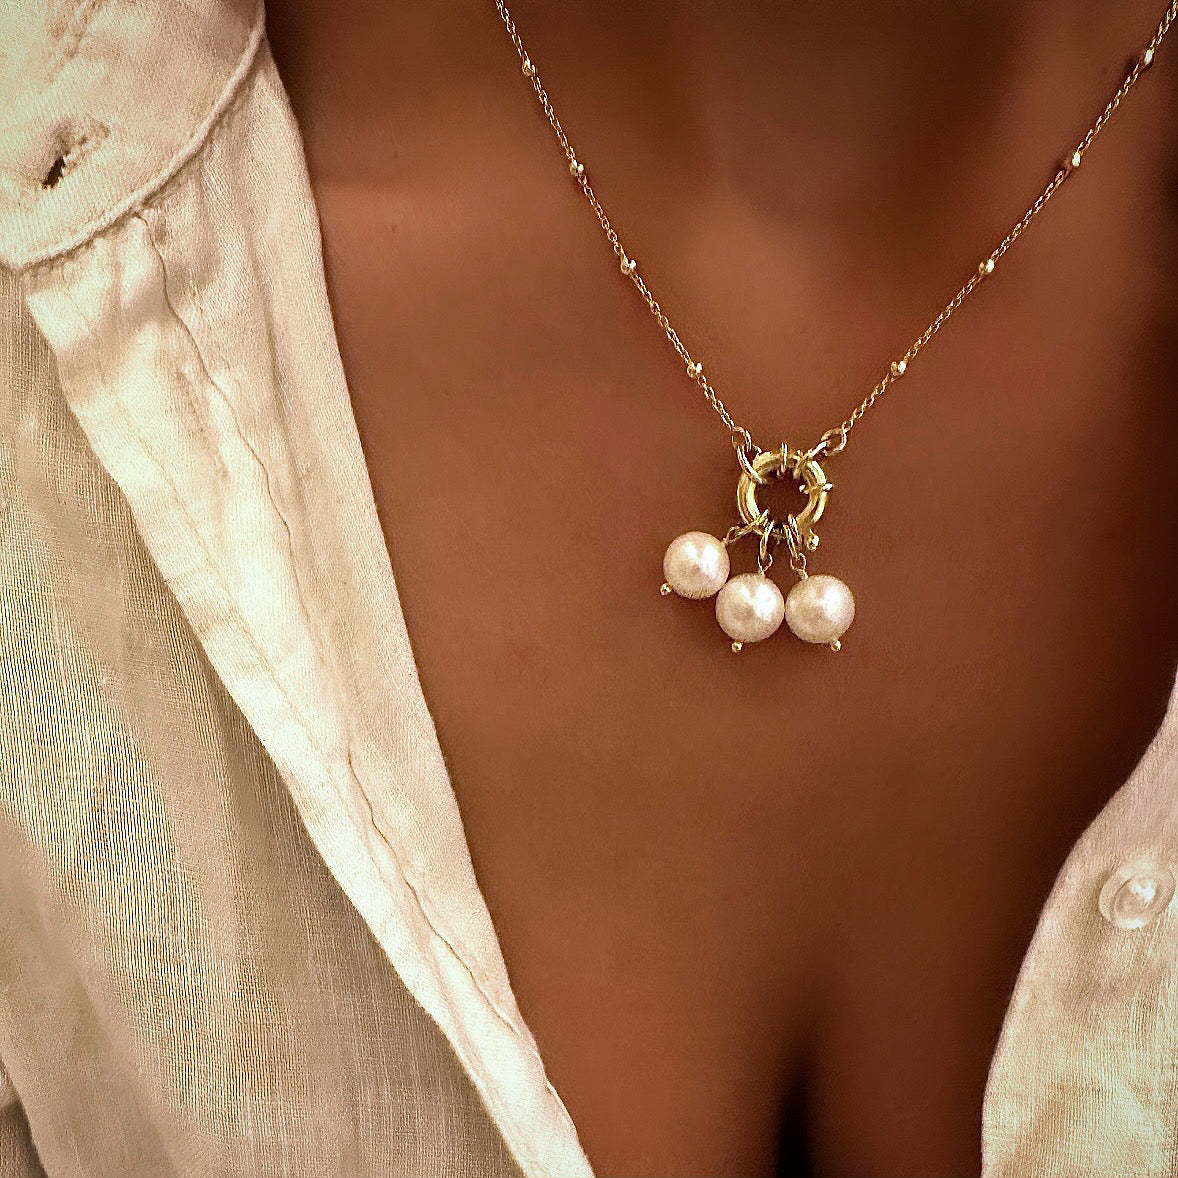 Grace necklace